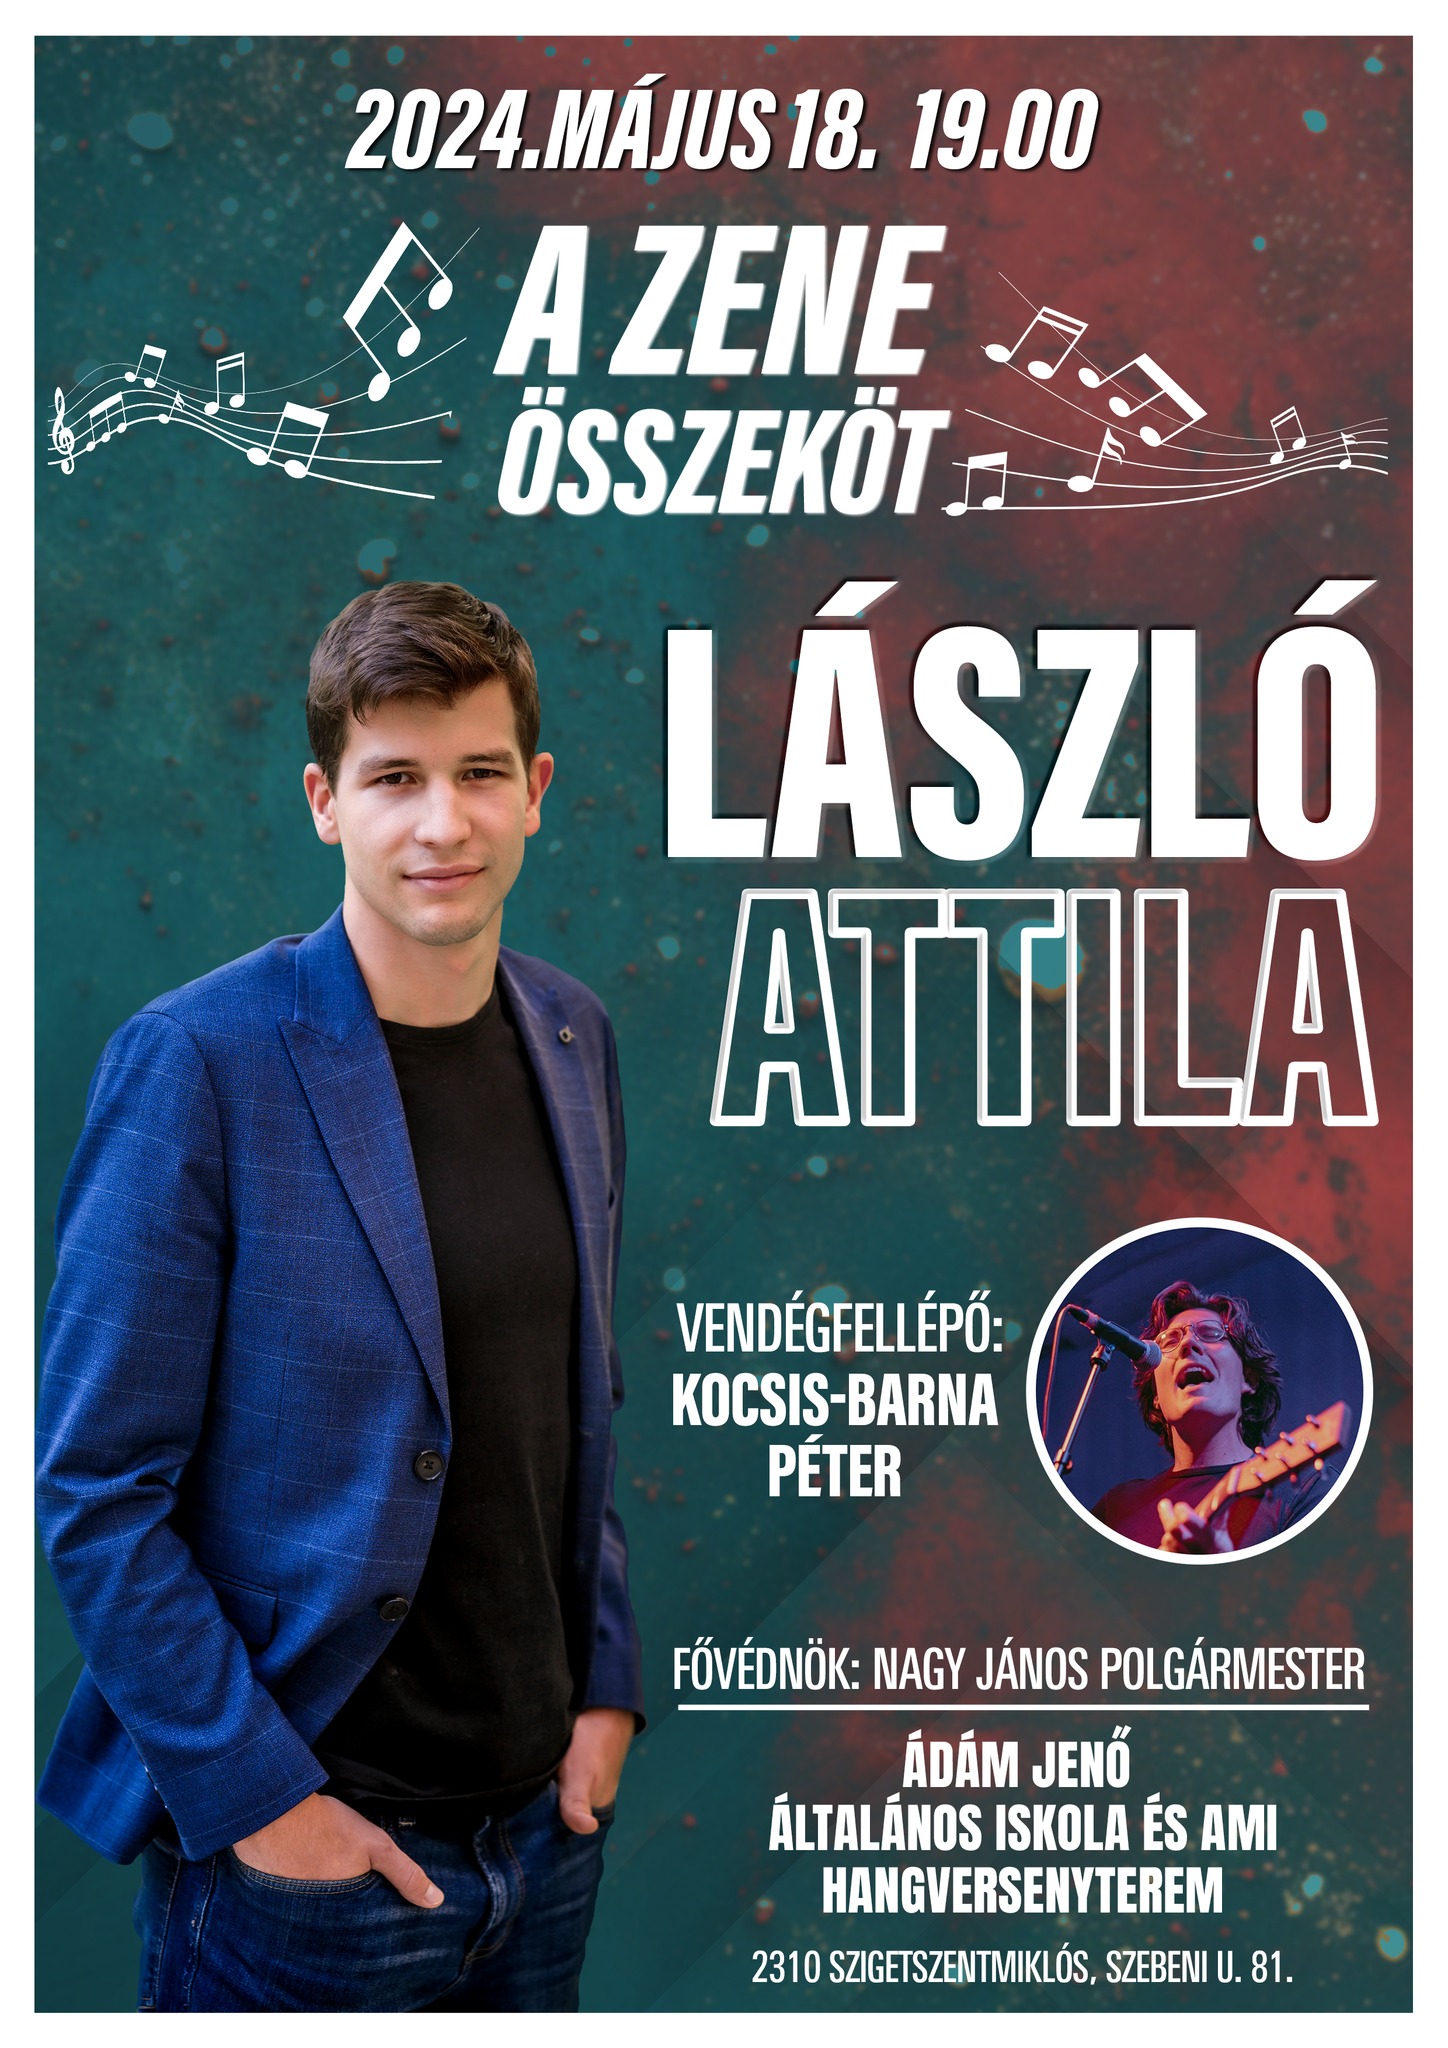 László Attila - A zene összeköt koncert /Vendégfellépő: Kocsis-Barna Péter/